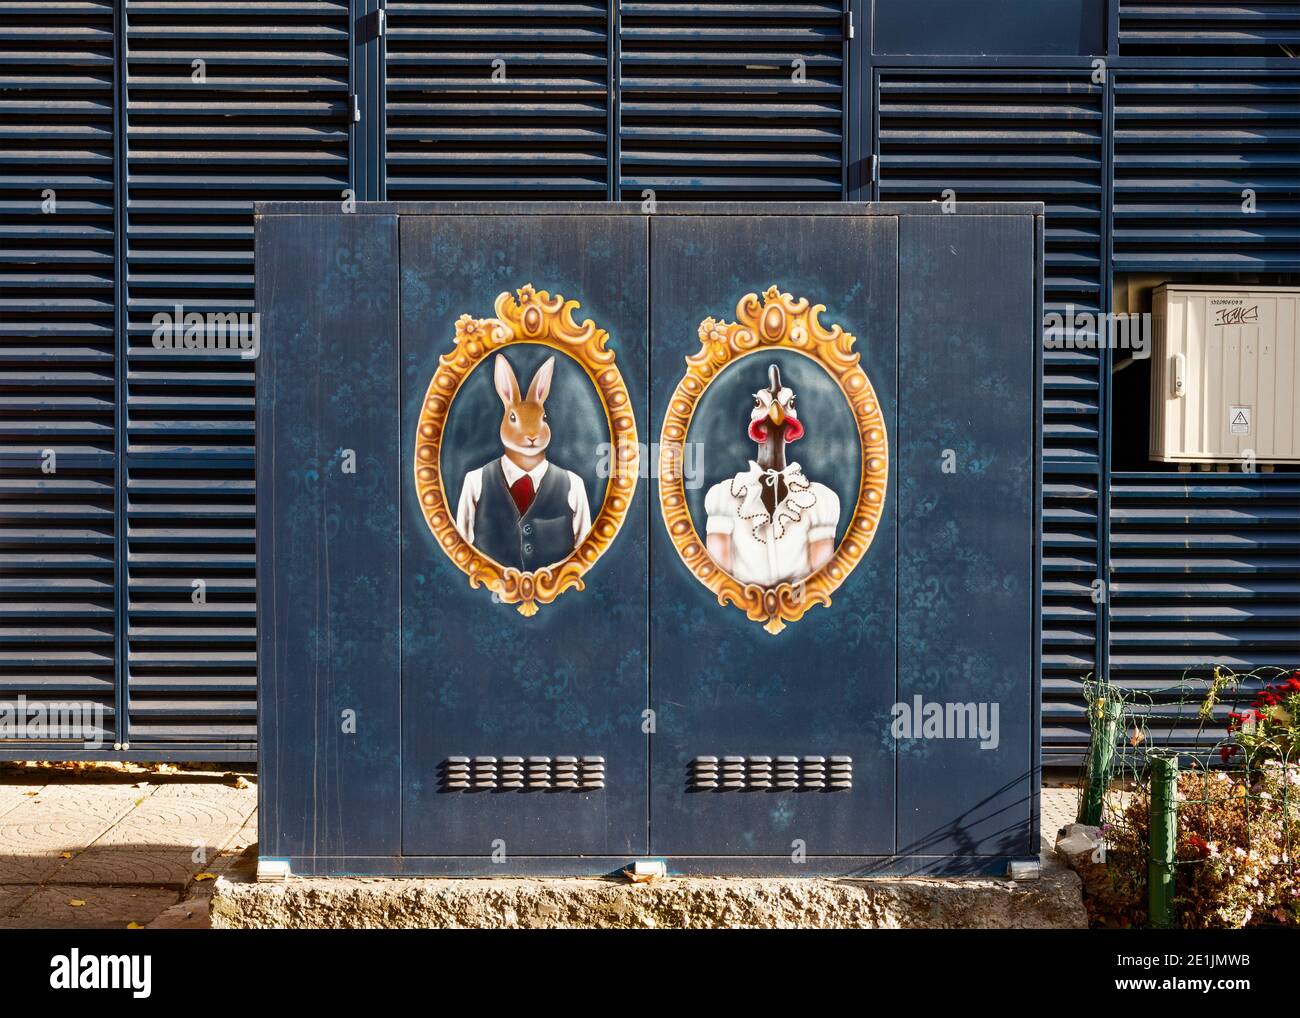 Graffiti Street art peinture colorée sur boîte électrique en métal représentant des portraits encadrés vintage de lapin humanisé habillé et de poule sur le bleu Banque D'Images